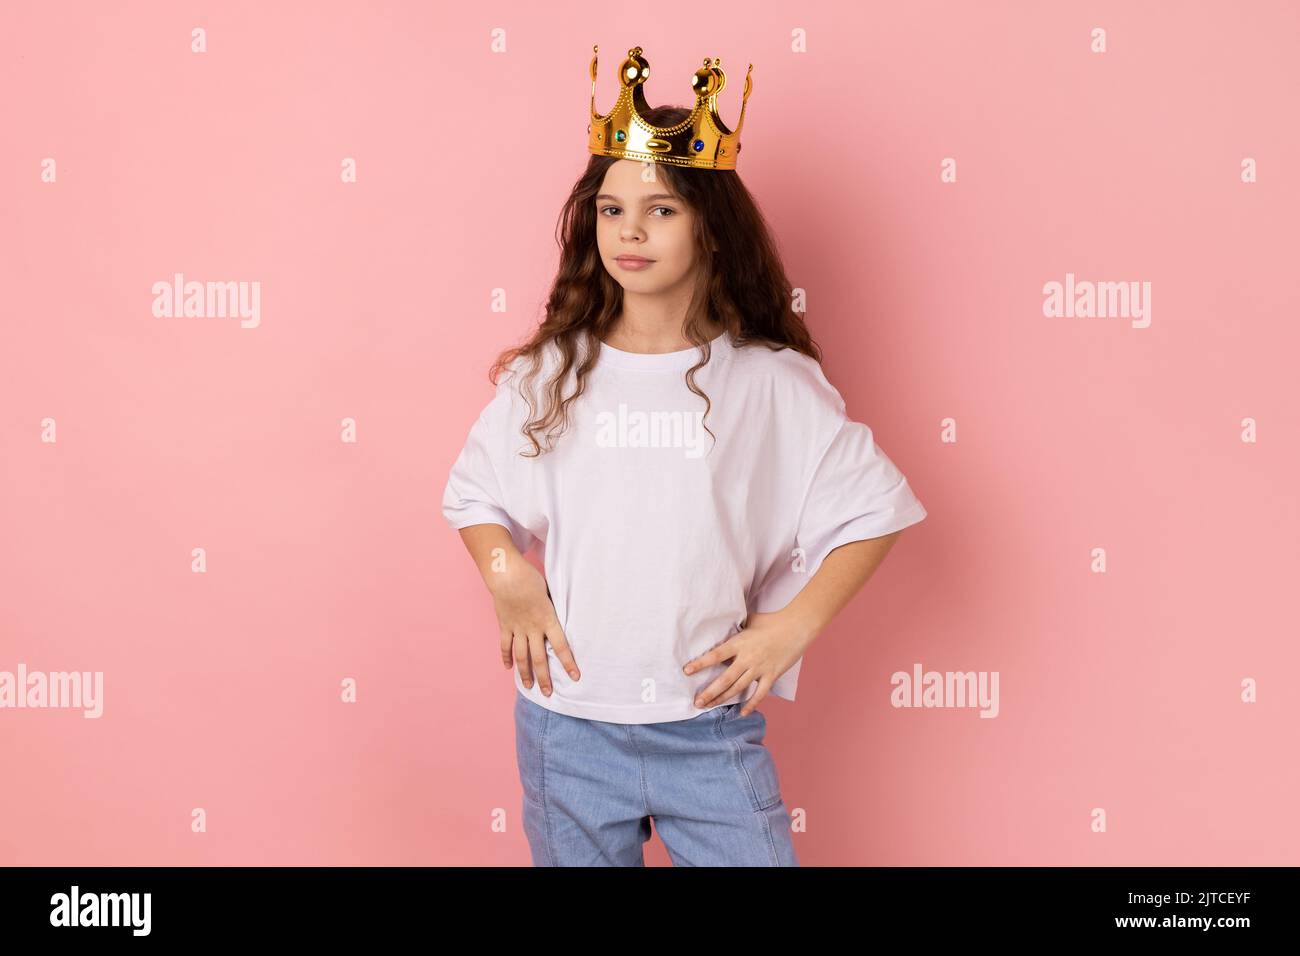 Porträt eines kleinen Mädchens in weißem T-Shirt, das egoistisch auf die Kamera schaut, die mit Krone auf dem Kopf posiert, vorgibt, Prinzessin zu sein, die Hände an den Hüften hält. Innenaufnahme des Studios isoliert auf rosa Hintergrund Stockfoto